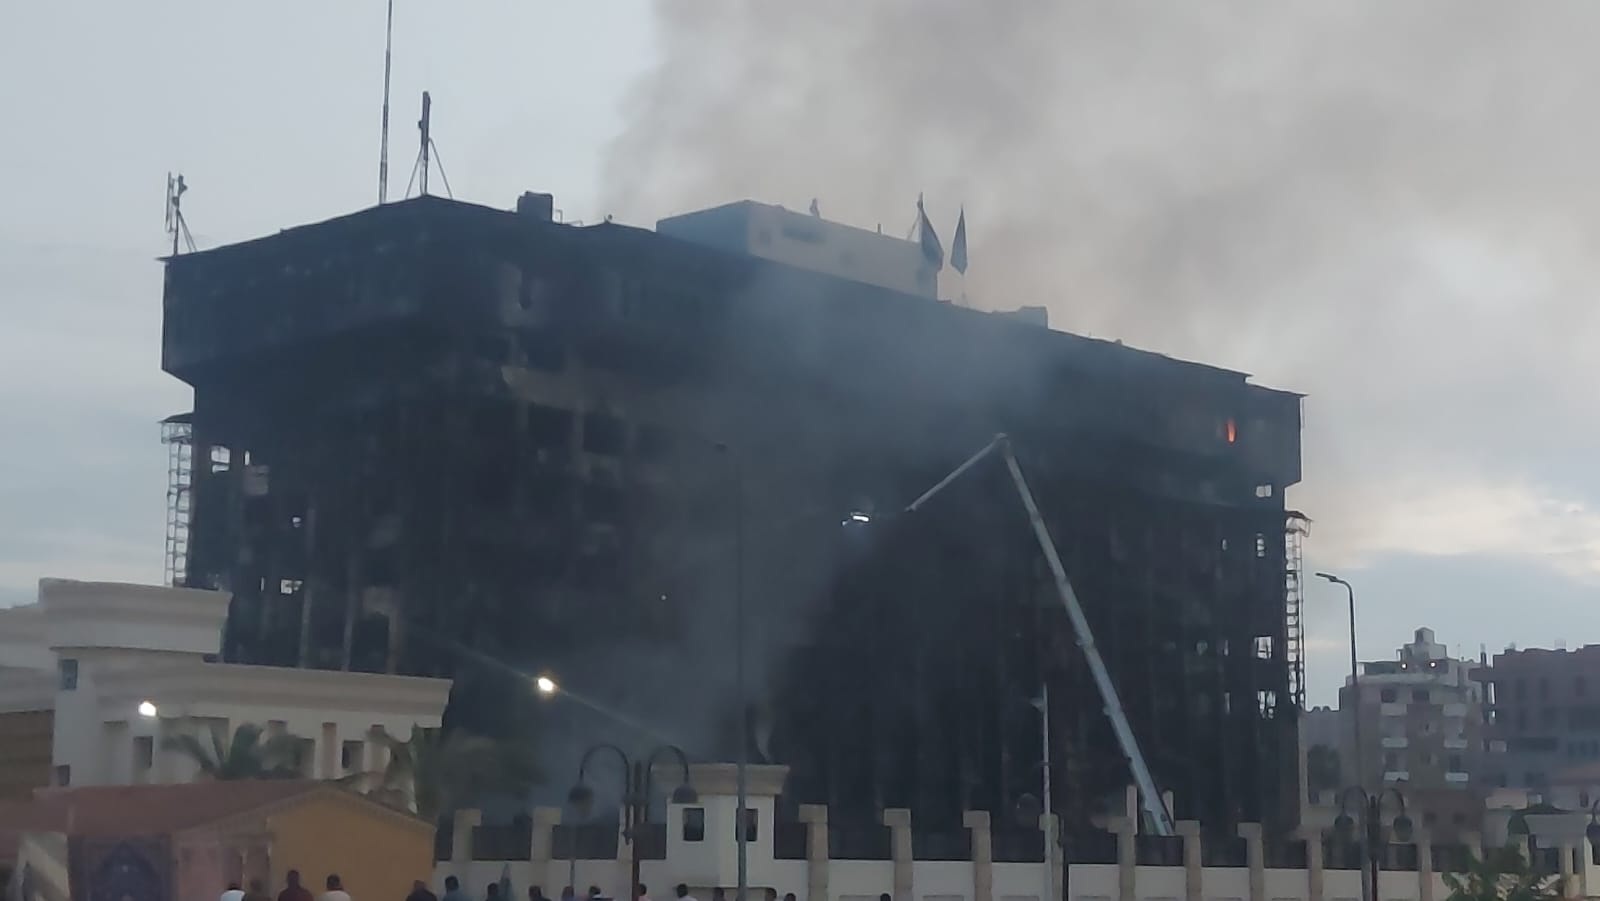 بيان النيابة العامة عن حريق مديرية أمن الاسماعيلية: المبنى تفحم بالكامل وإصابة 33 فى الحريق

